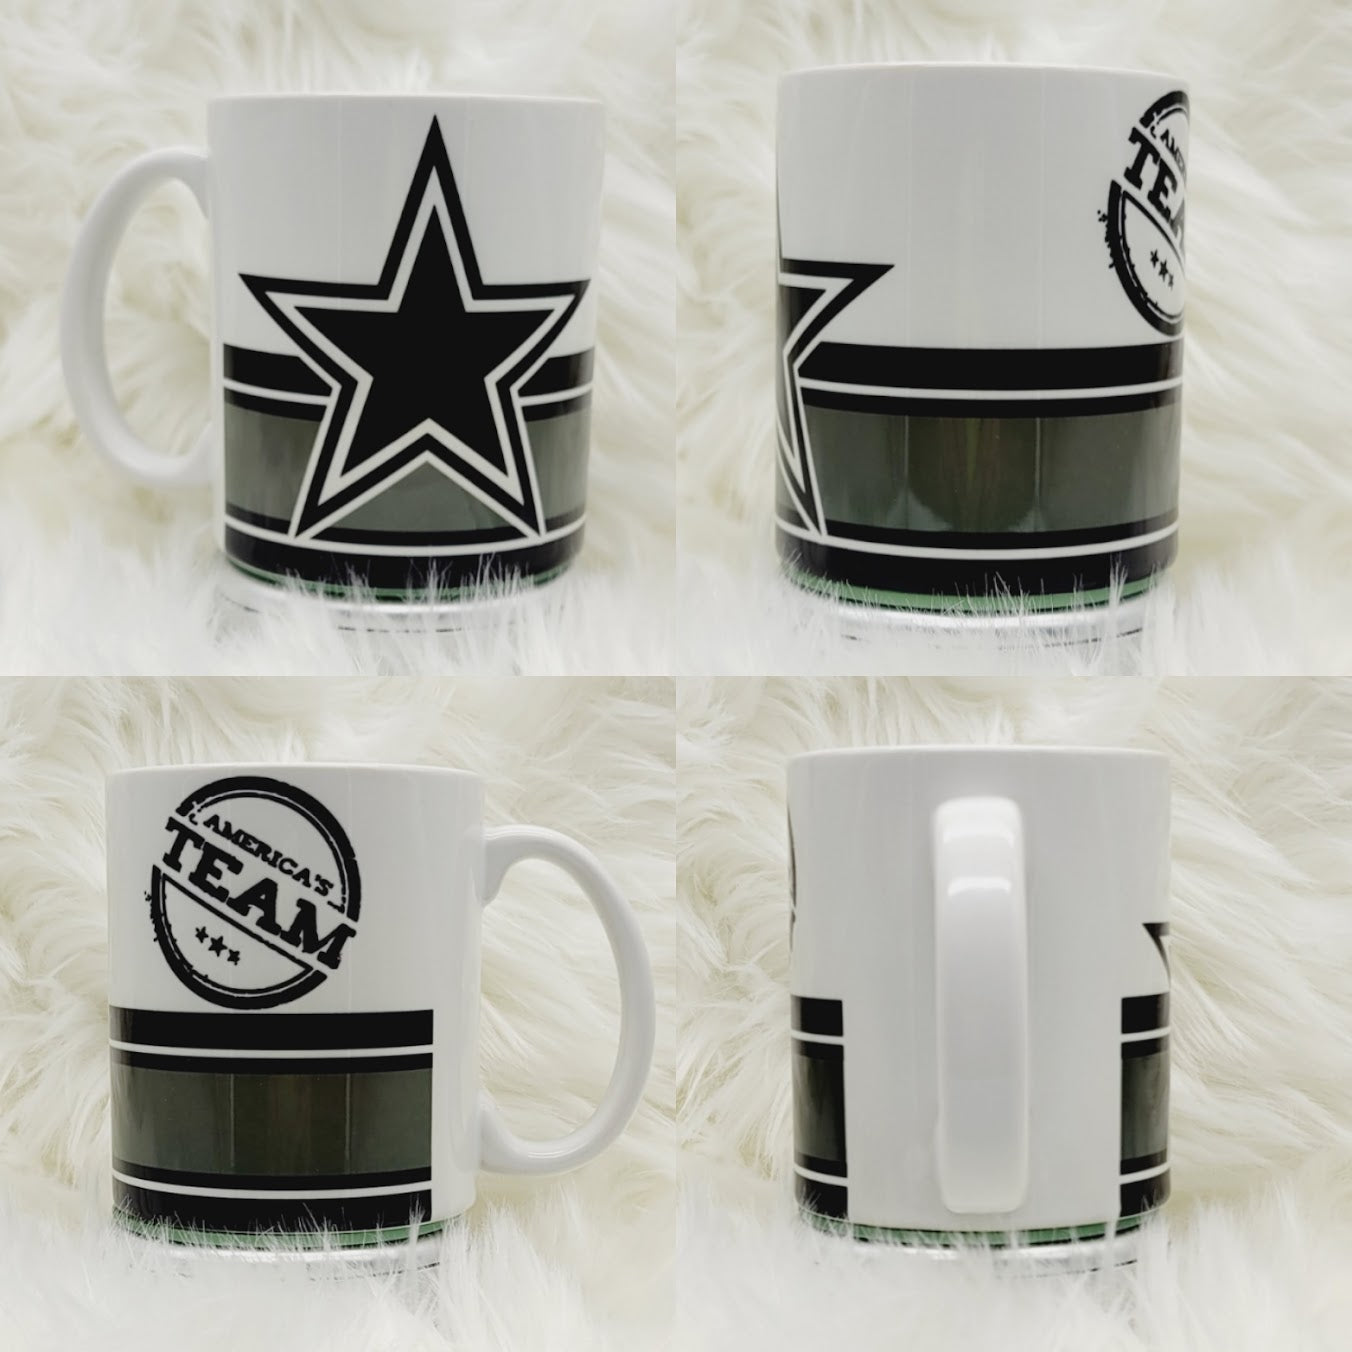 Dallas Cowboys 15 oz Skyline Edition Coffee Mug